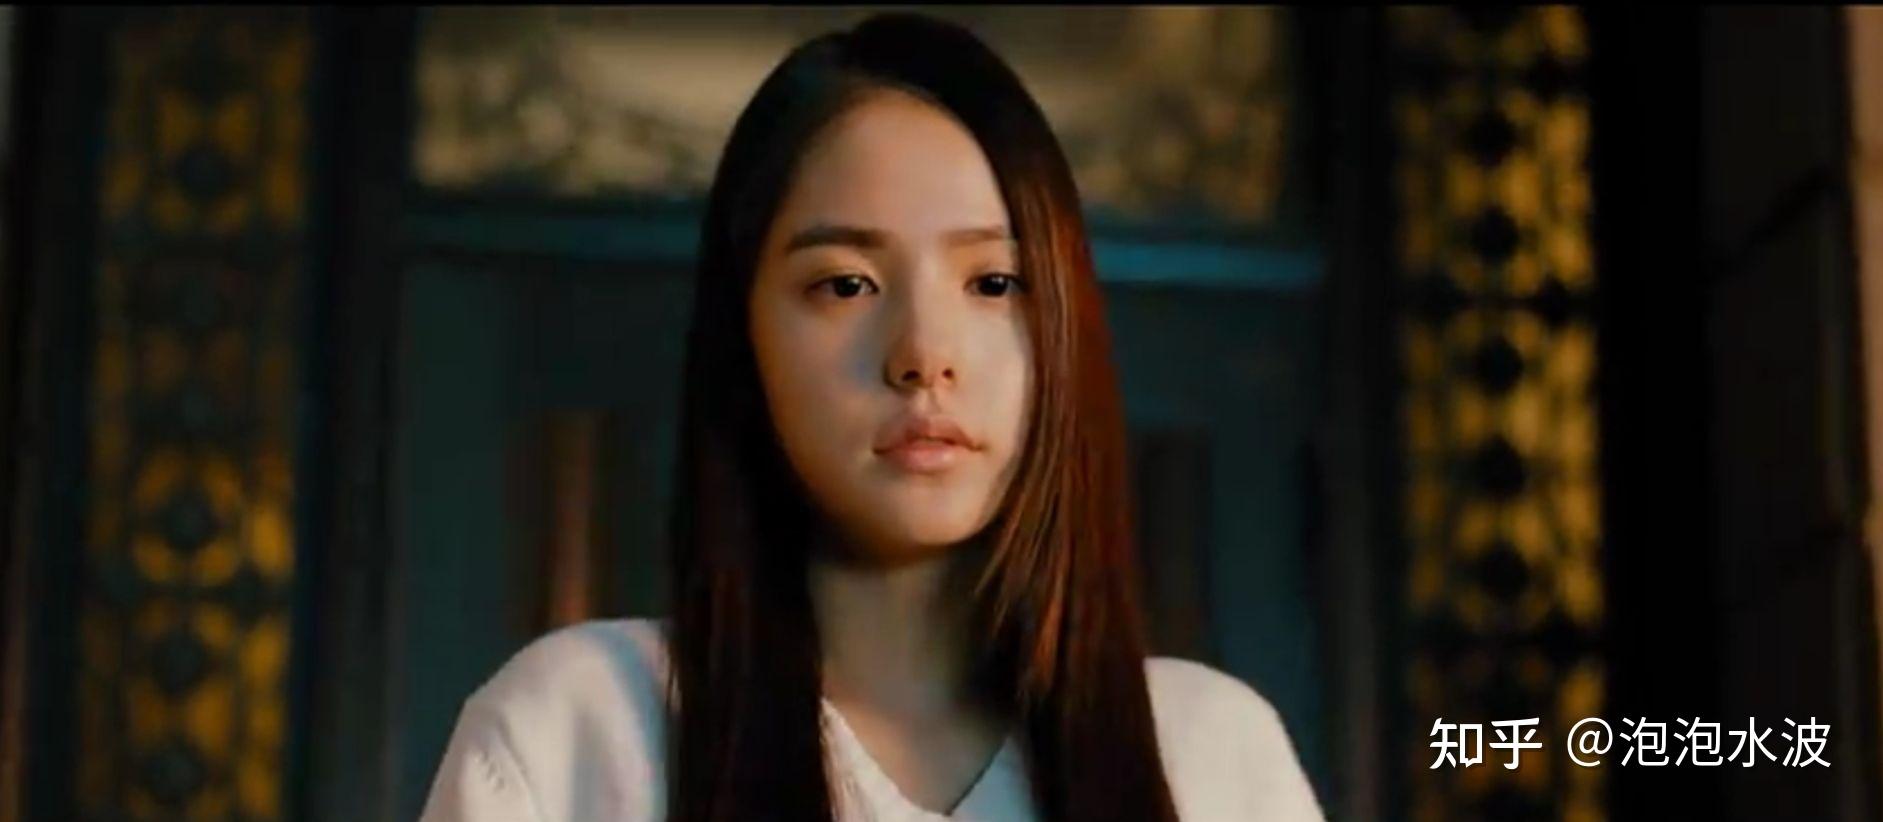 电影《阳光姐妹淘》引起热议,这部影片除了国产版本外,还有日本,韩国